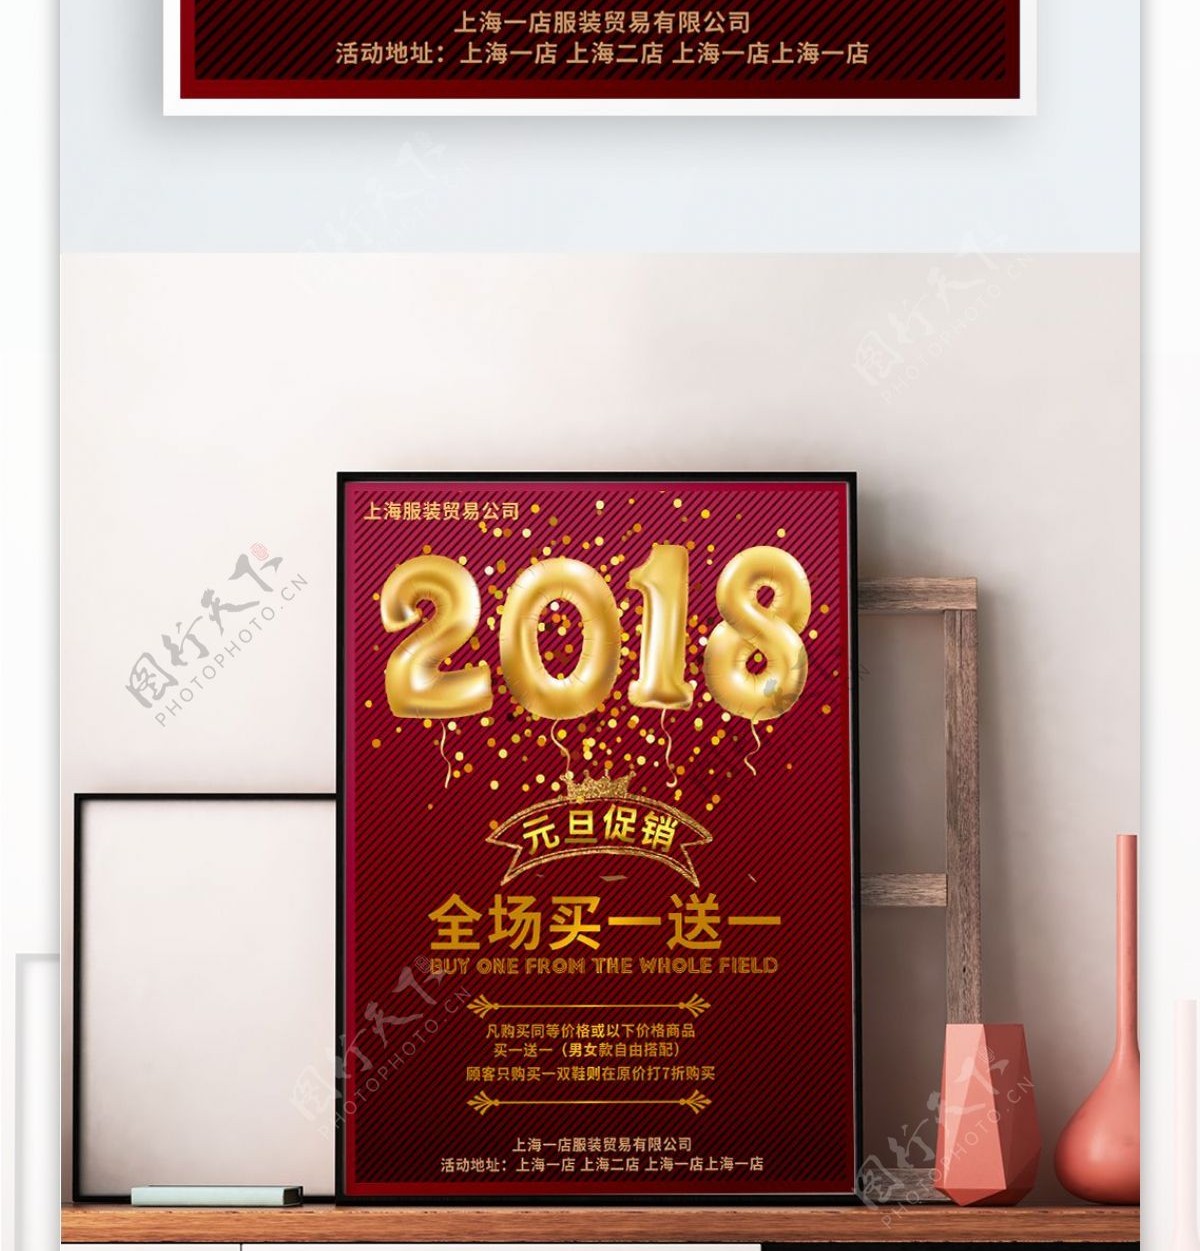 金色2018气球主题红色促销海报PSD